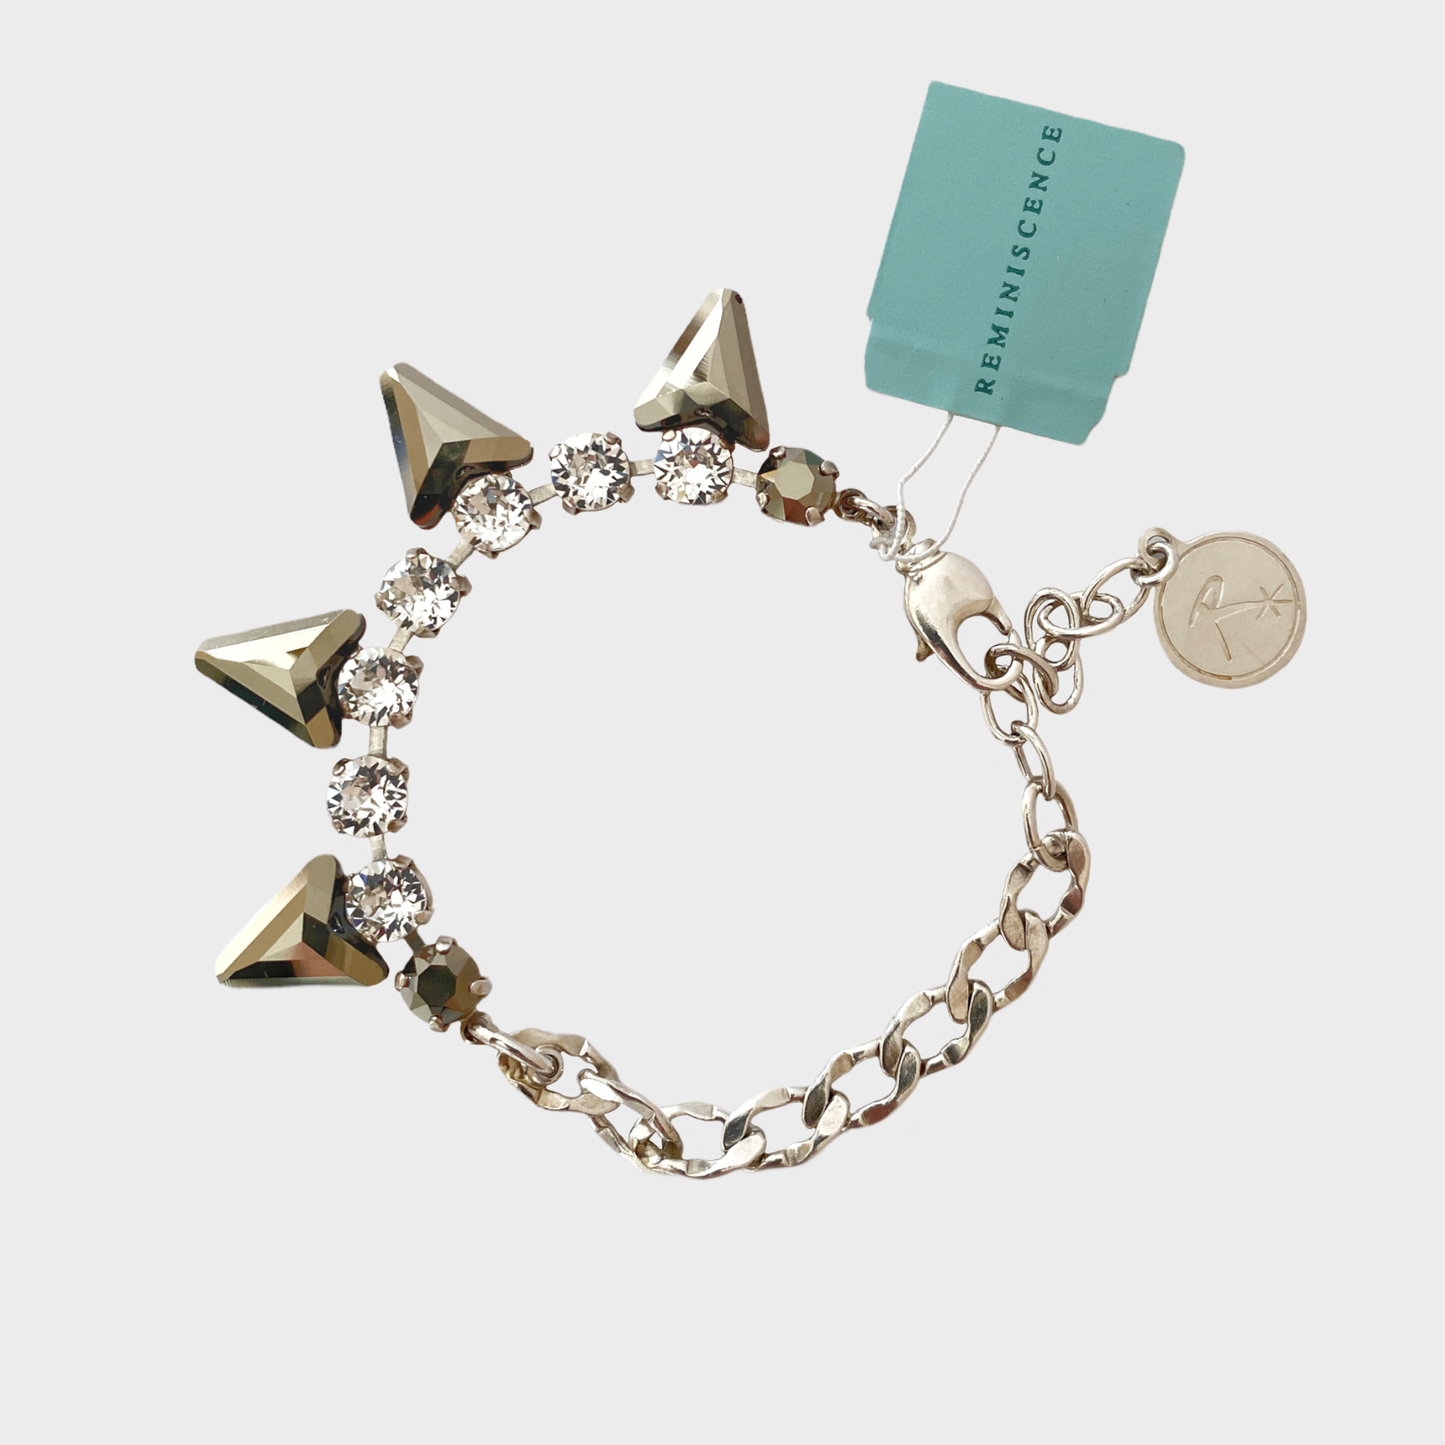 Reminiscence triangle bracelet (France)